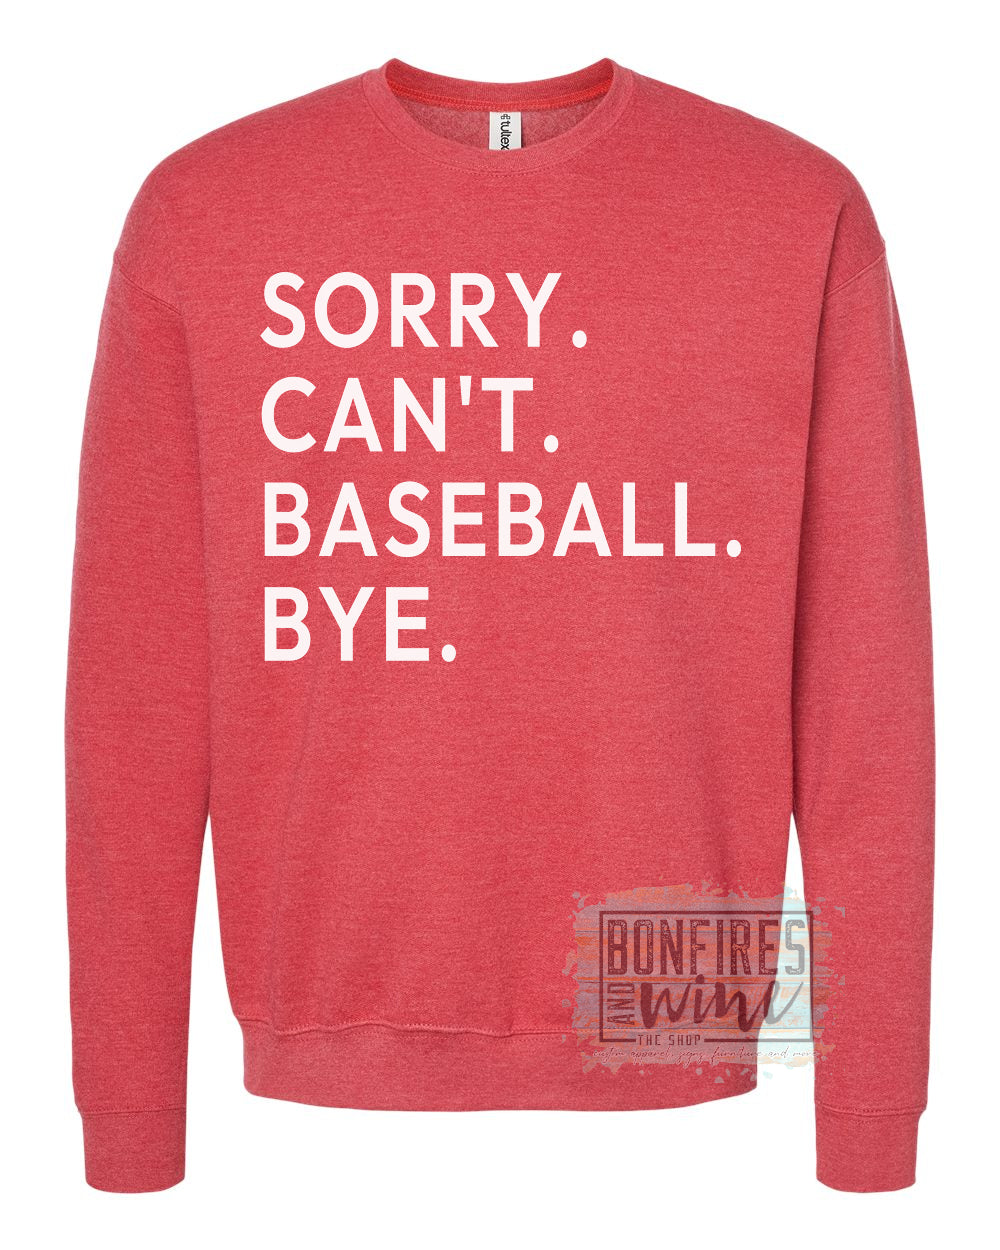 Sorry. Can’t. Baseball. Bye.